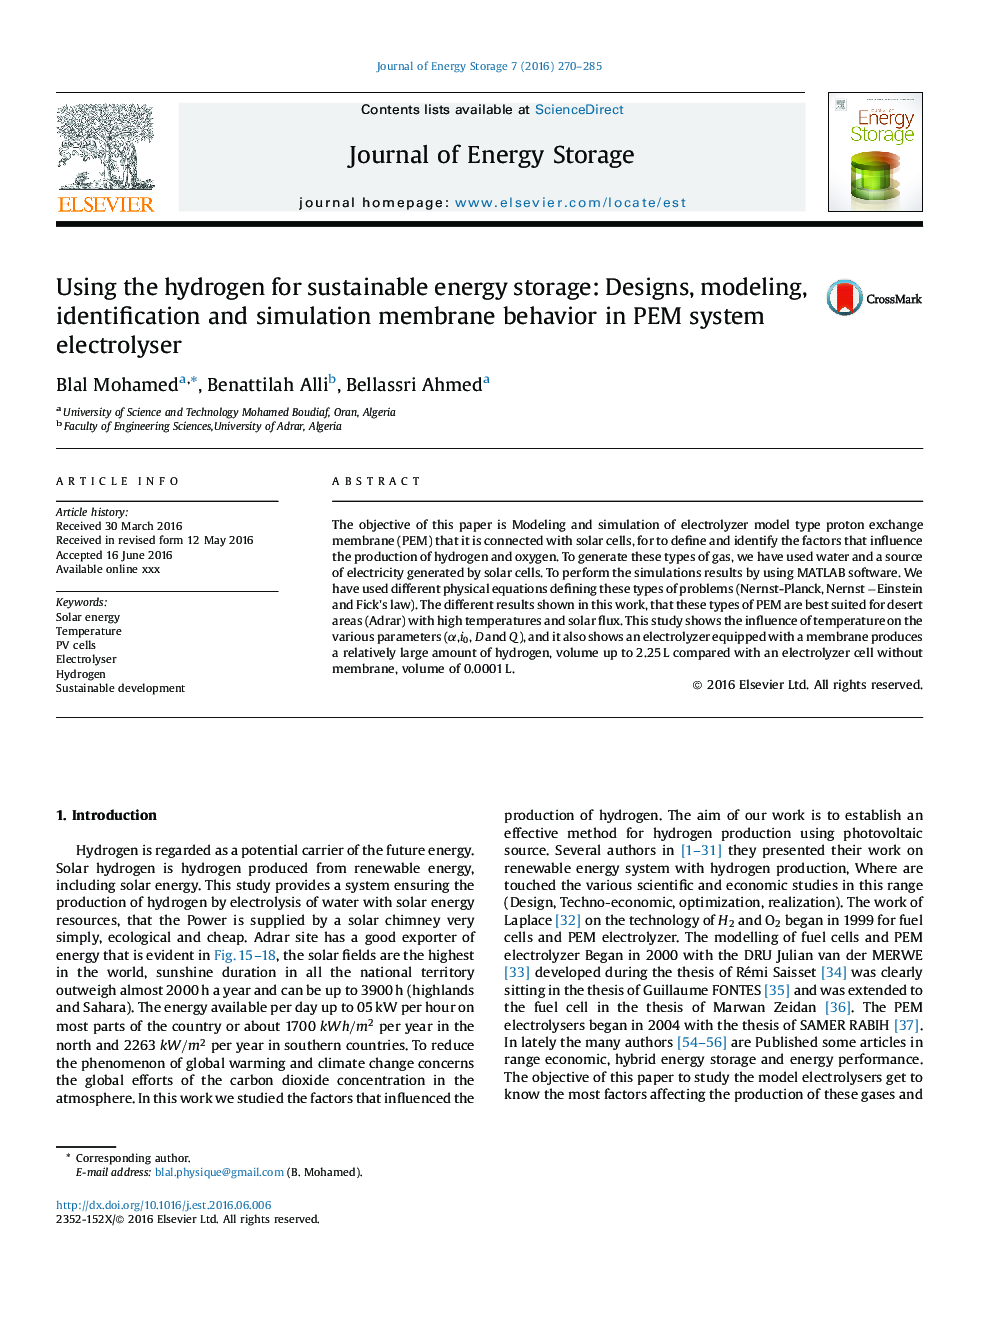 استفاده از هیدروژن برای ذخیره سازی انرژی پایدار: طراحی، مدل سازی، شناسایی و رفتار غشایی شبیه سازی در electrolyser سیستم PEM 